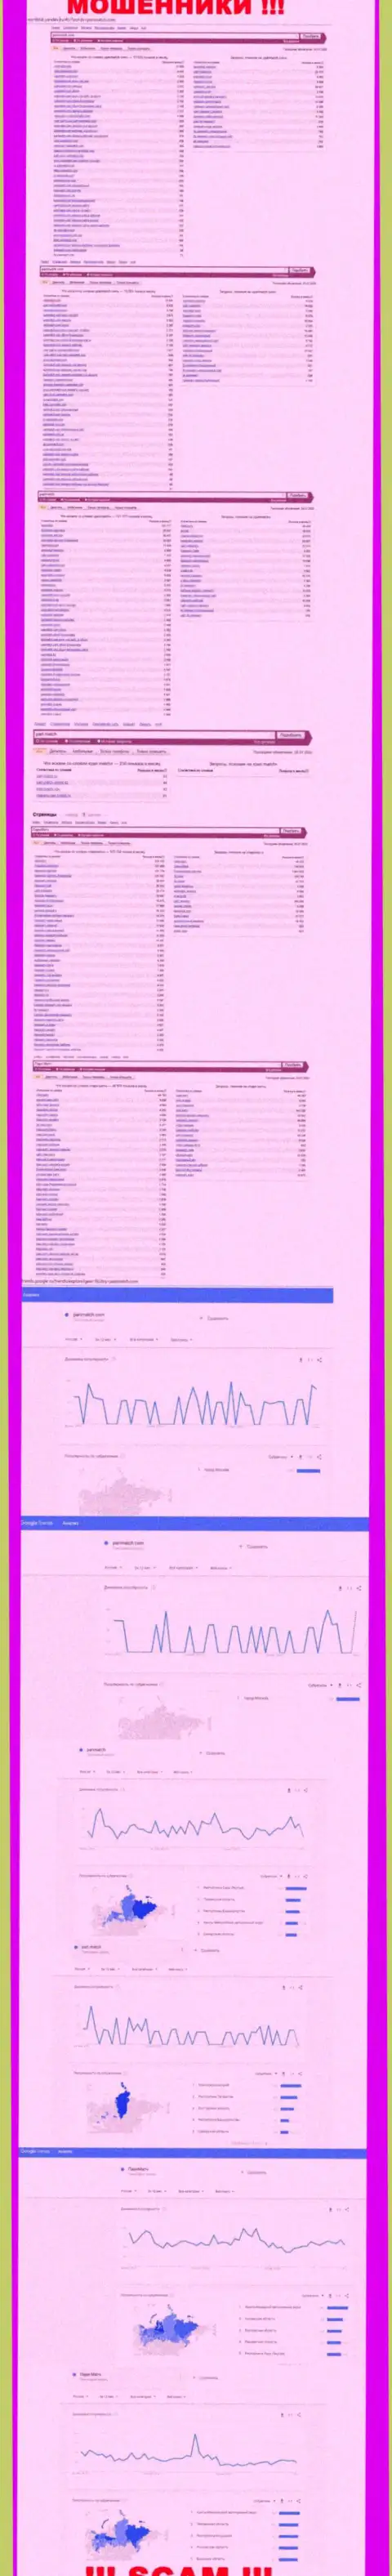 Количество онлайн-запросов в поисковиках глобальной сети интернет по бренду воров ПариМатч